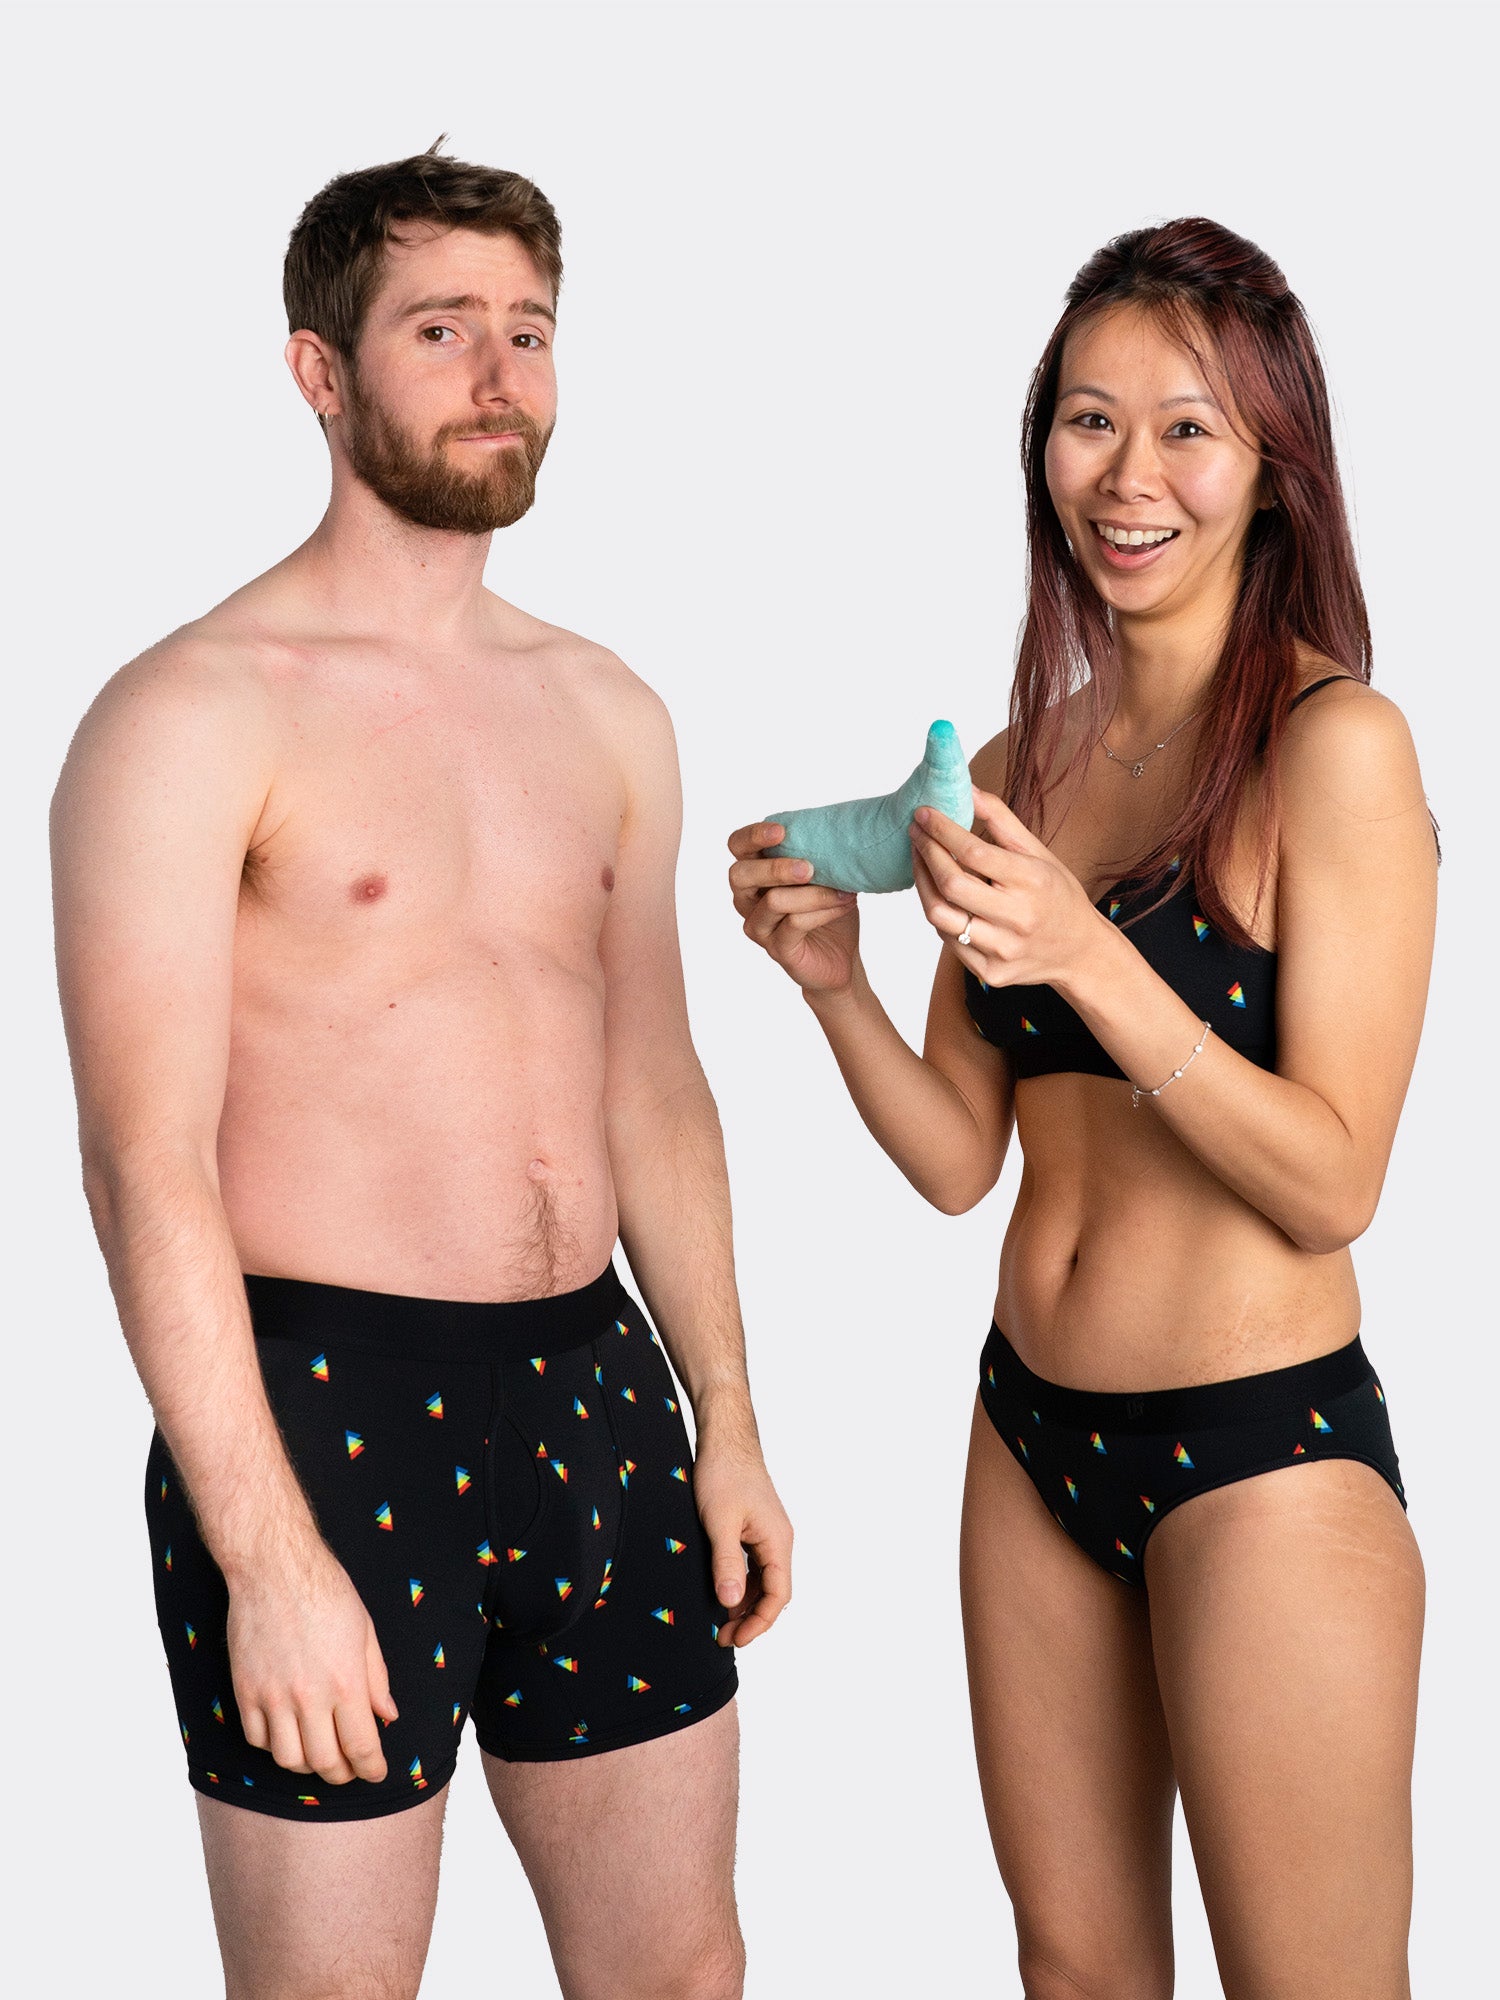 Couples Matching Underwear,Matching Underwear for Boyfriend and Girlfriend